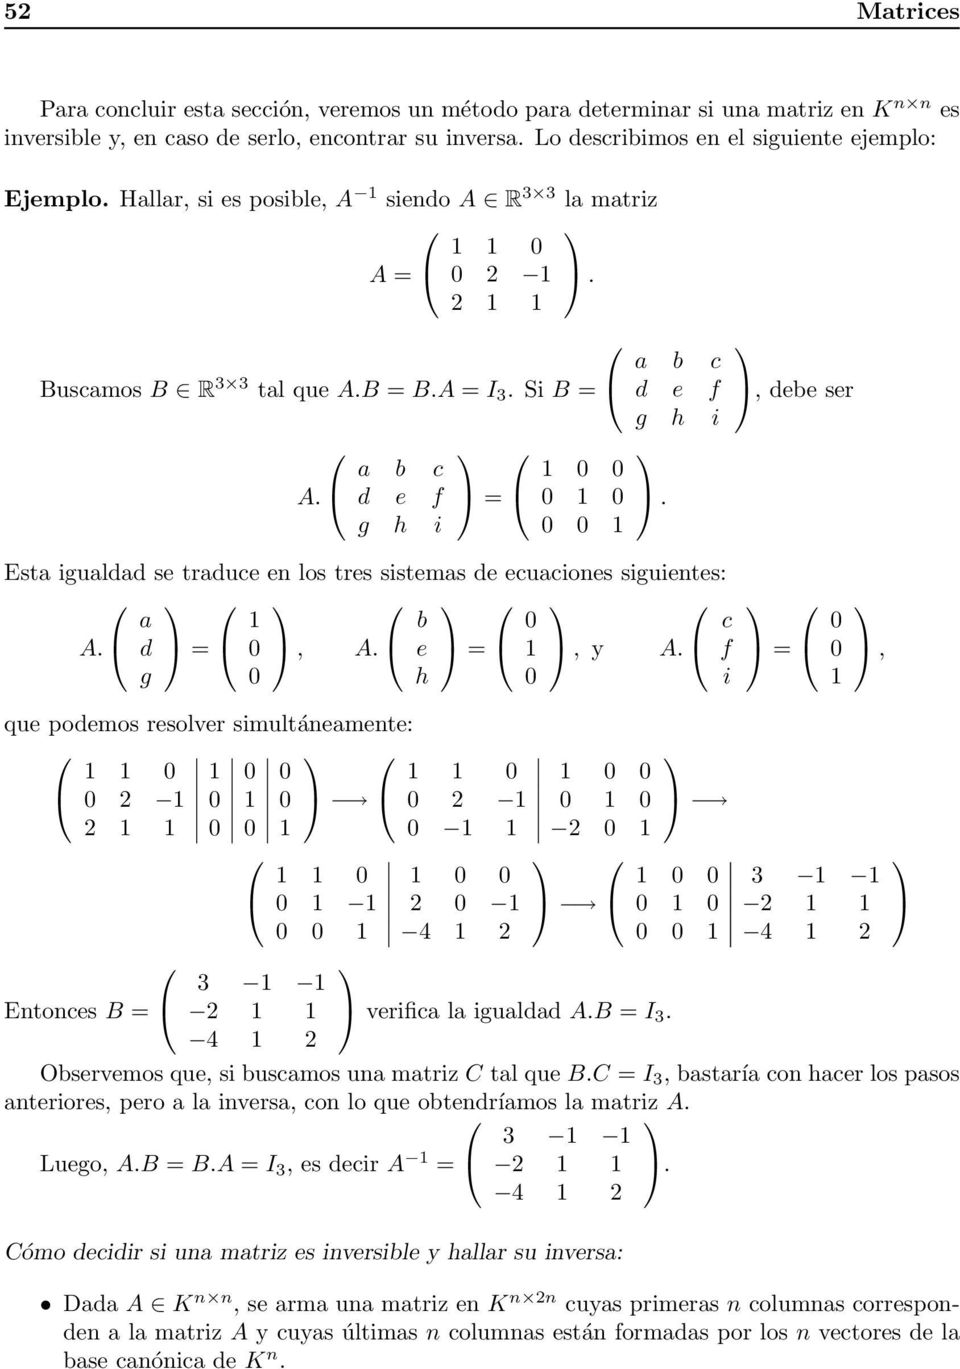 a b c d e f g h i = 1 0 0 0 1 0 0 0 1 a b c d e f g h i., debe ser Esta igualdad se traduce en los tres sistemas de ecuaciones siguientes: A. a d g = 1 0 0, A. b e h = 0 1 0, y A.